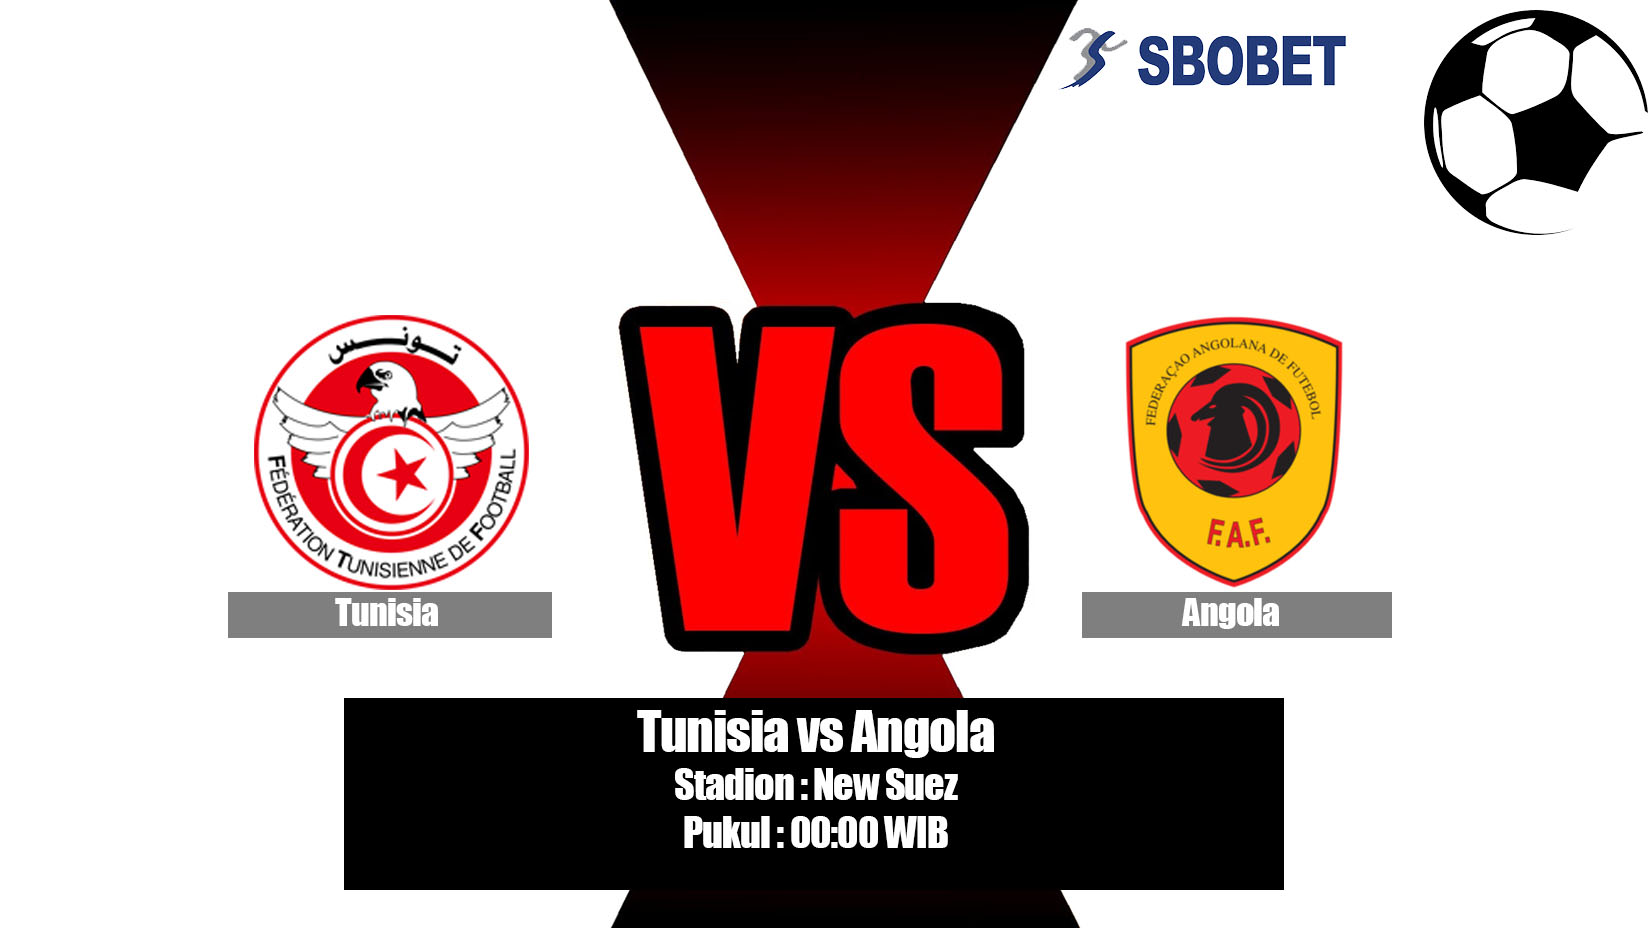 Prediksi Bola Tunisia vs Angola 25 Juni 2019